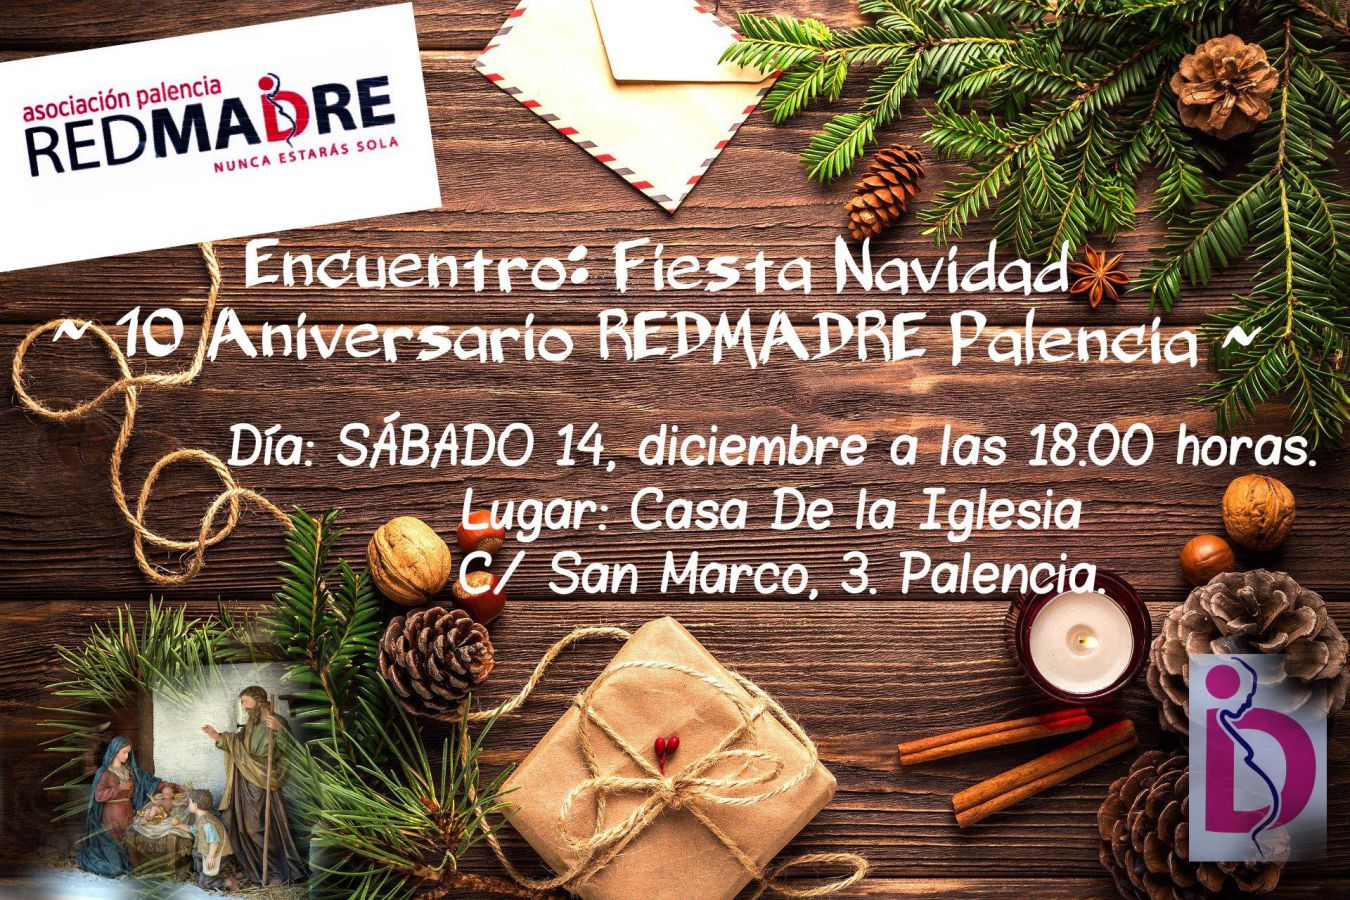 REDMADRE Palencia celebracion diciembre 2019